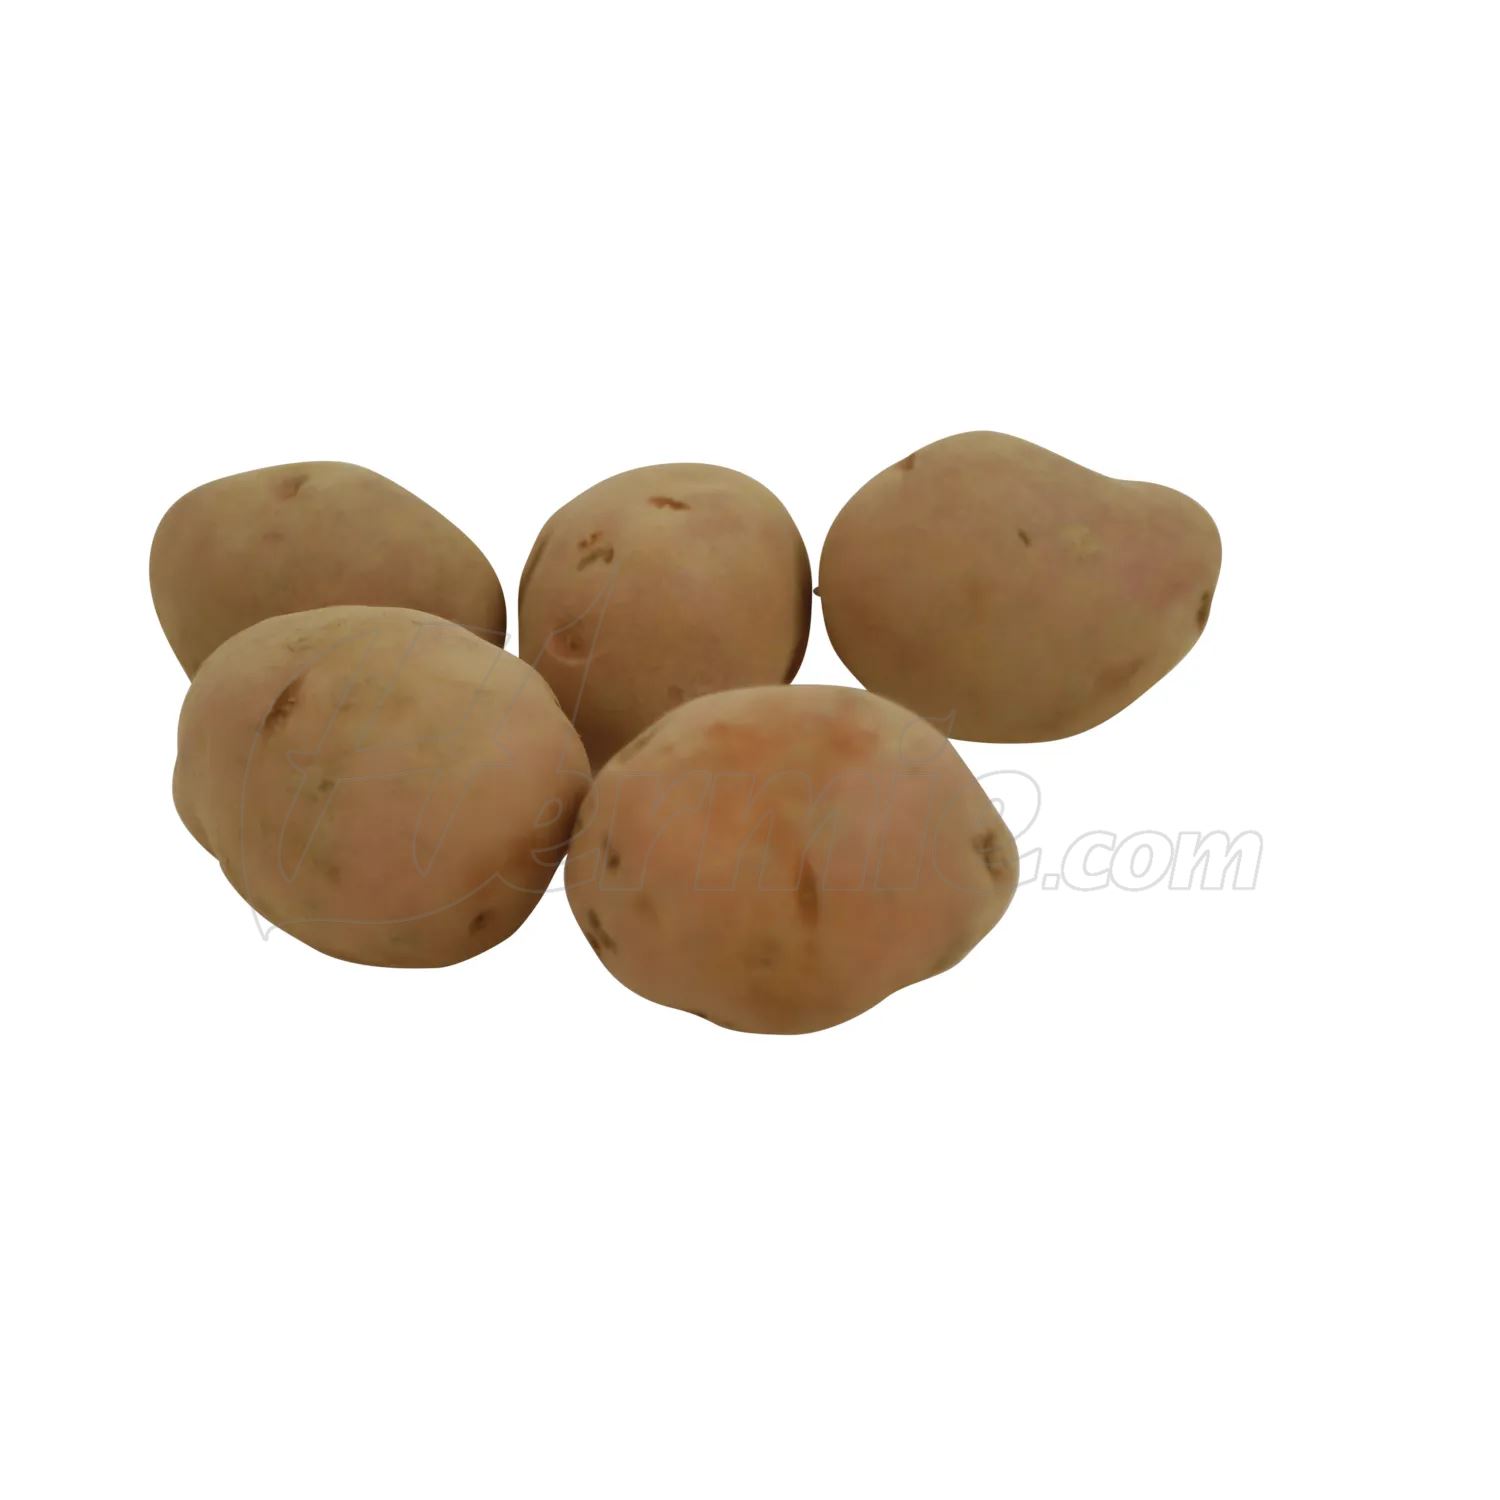 Pootaardappel-Rosabelle-zakje-1-5kg-rood-25-35-Frankrijk-